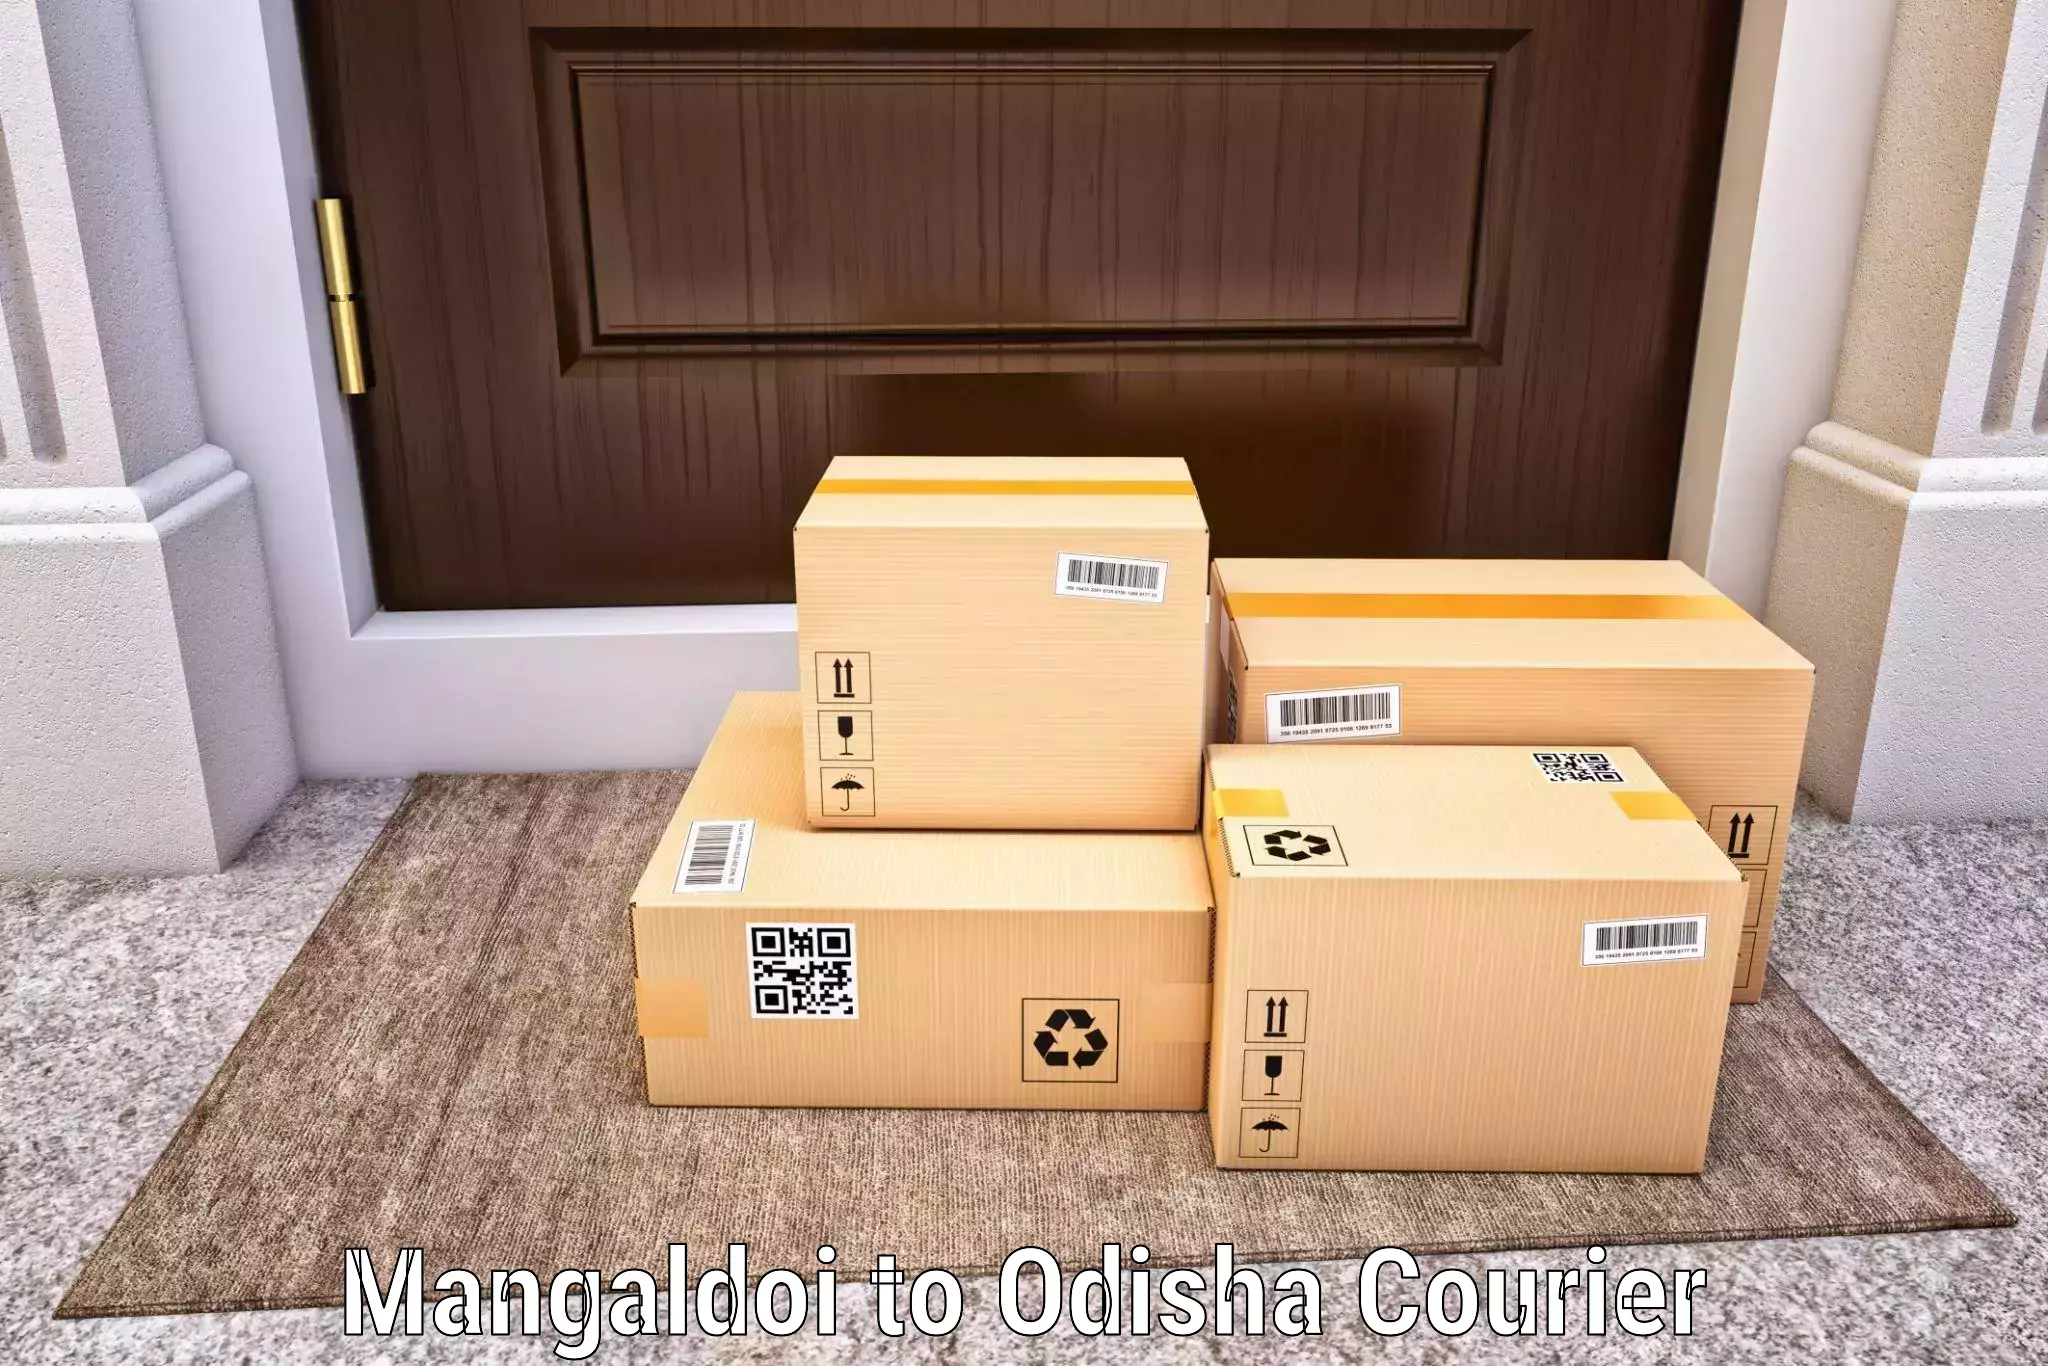 Corporate courier solutions Mangaldoi to Daspalla